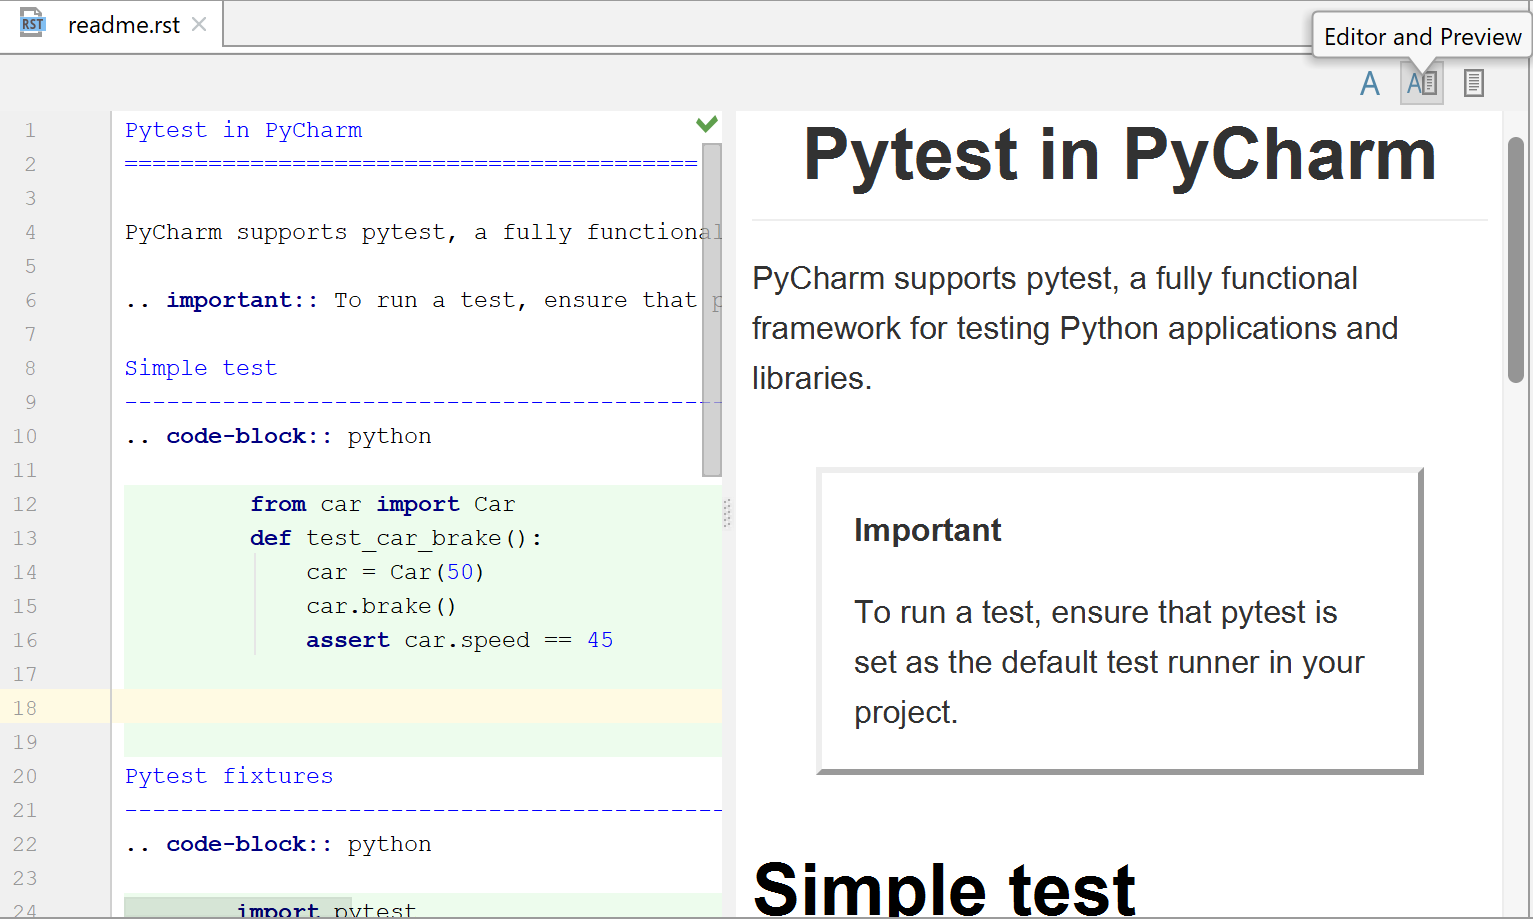 Команда import pytest. Pytest шпаргалка. Docstring Python примеры. RESTRUCTUREDTEXT Формат. PYCHARM docstring цвет.